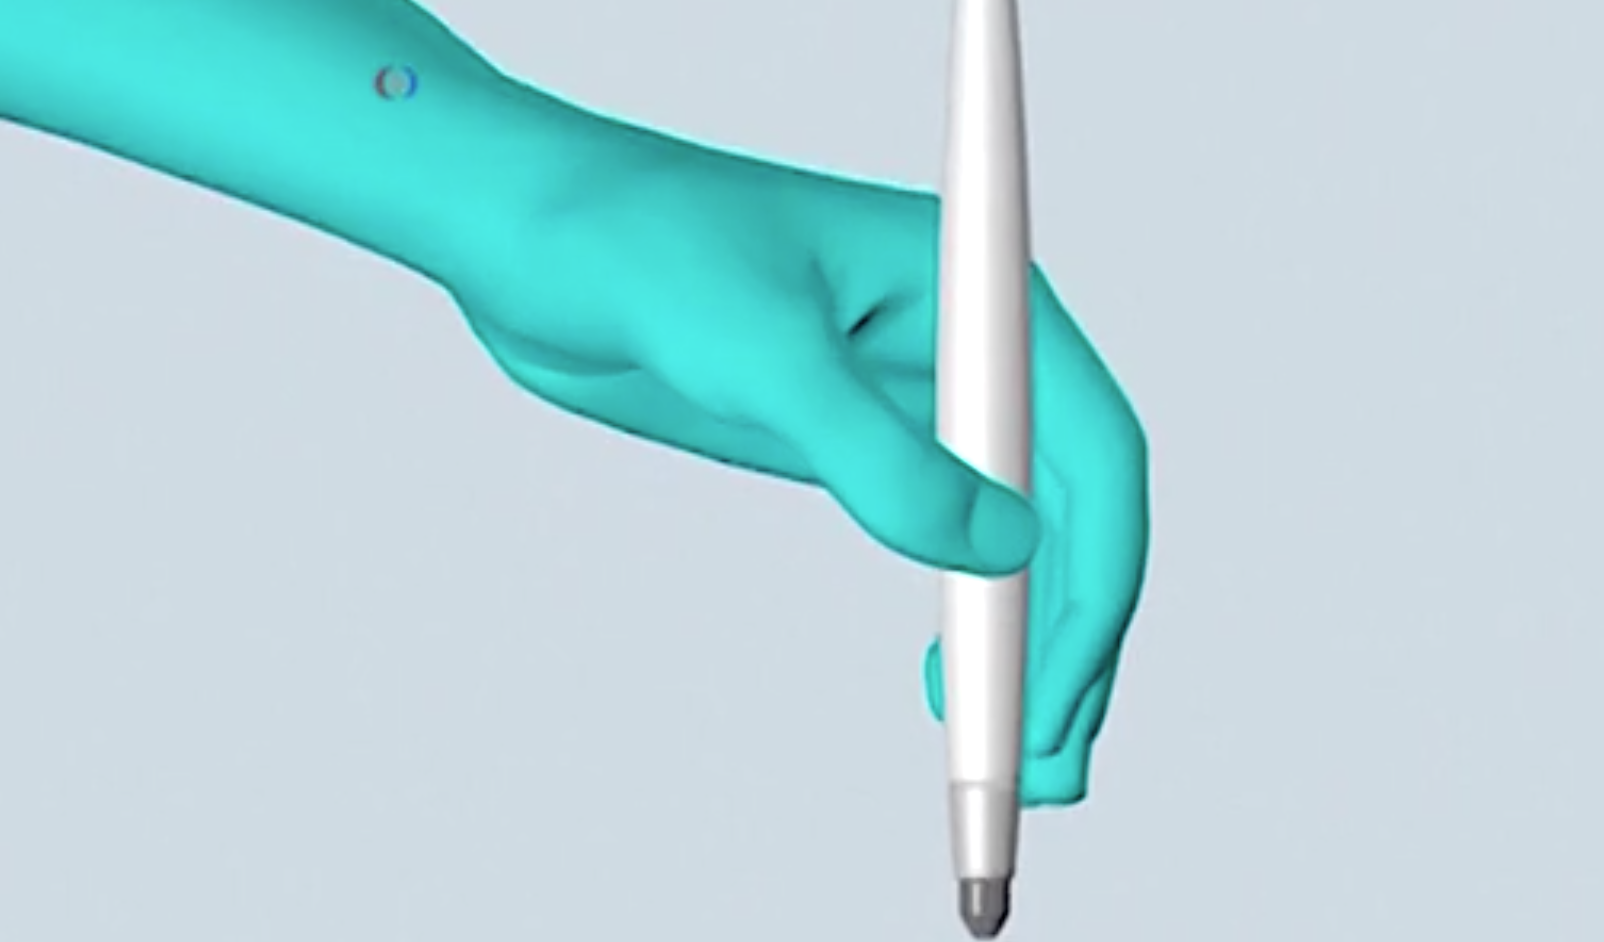 Xərçəng xəstəliyini 10 saniyəyə aşkar edən “MassSpec Pen” cihazı [Video]